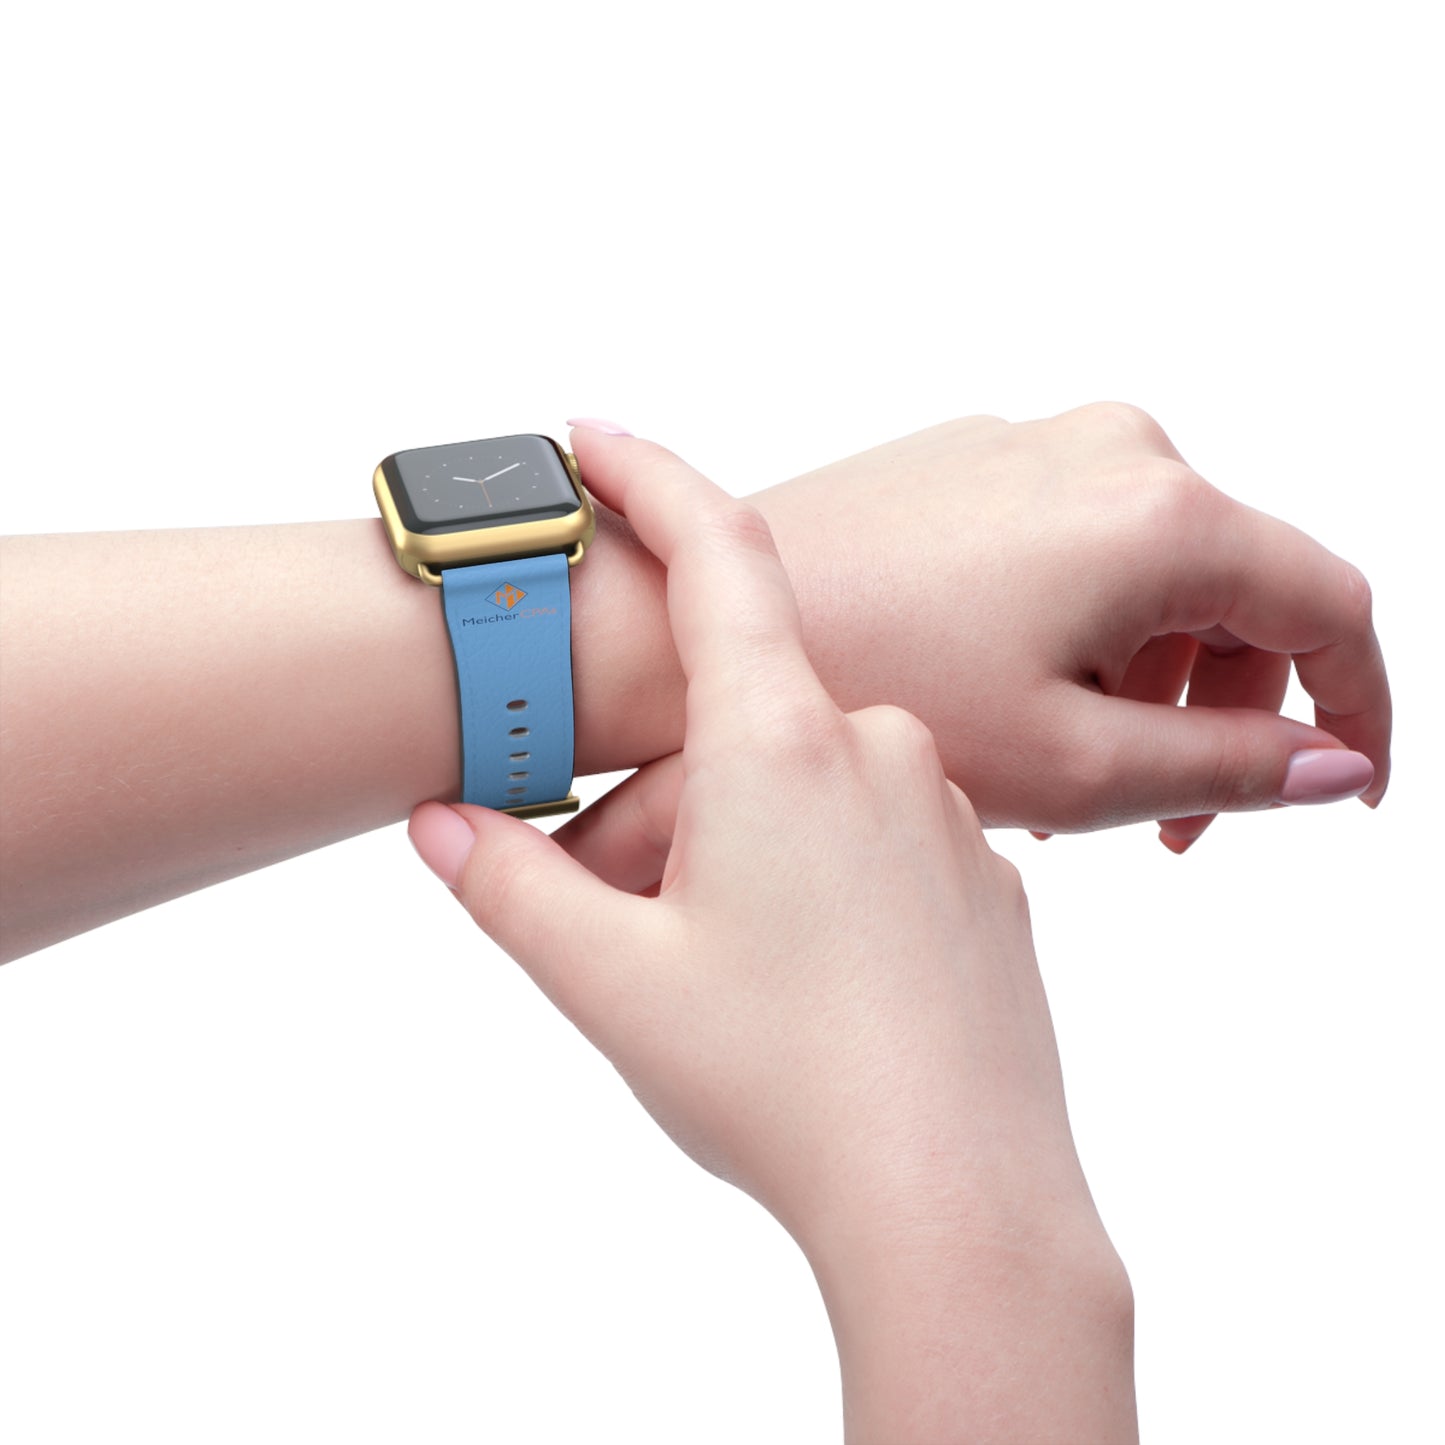 Meicher - Blue Apple Watch Band